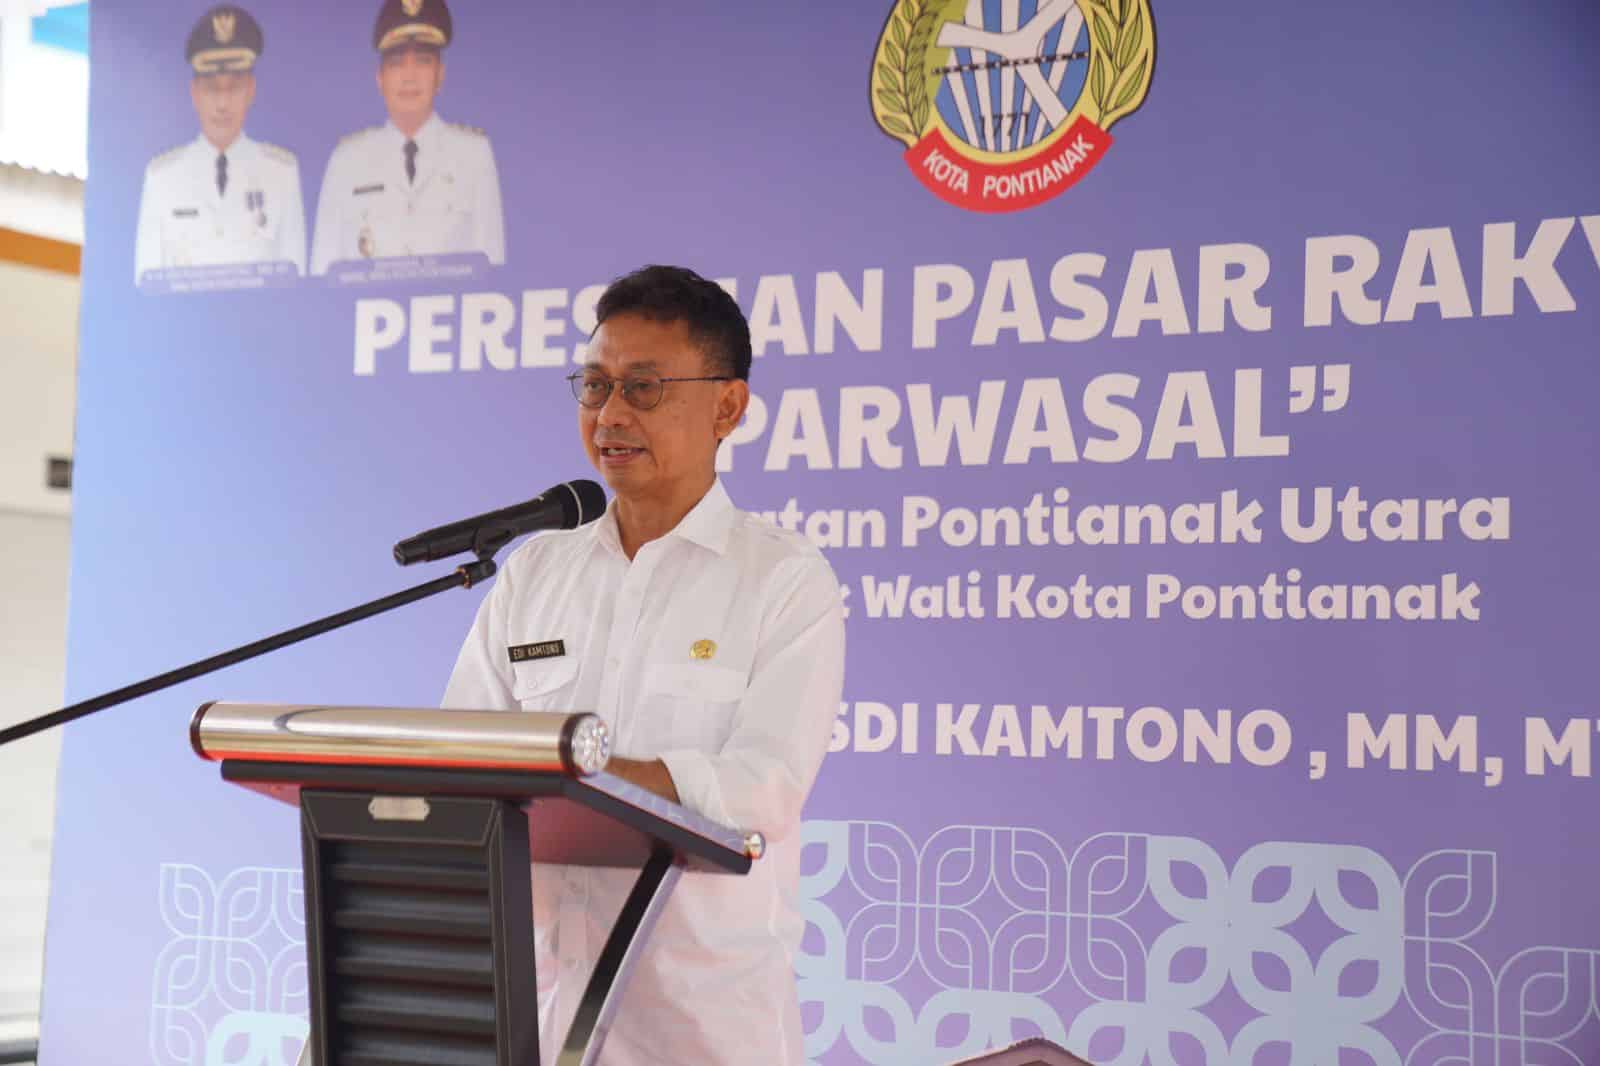 Wali Kota Pontianak, Edi Rusdi Kamtono memberikan sambutan sebelum diresmikannya Pasar Rakyat Parwasal di Pontianak Utara. (Foto: Kominfo/Prokopim Pontianak)